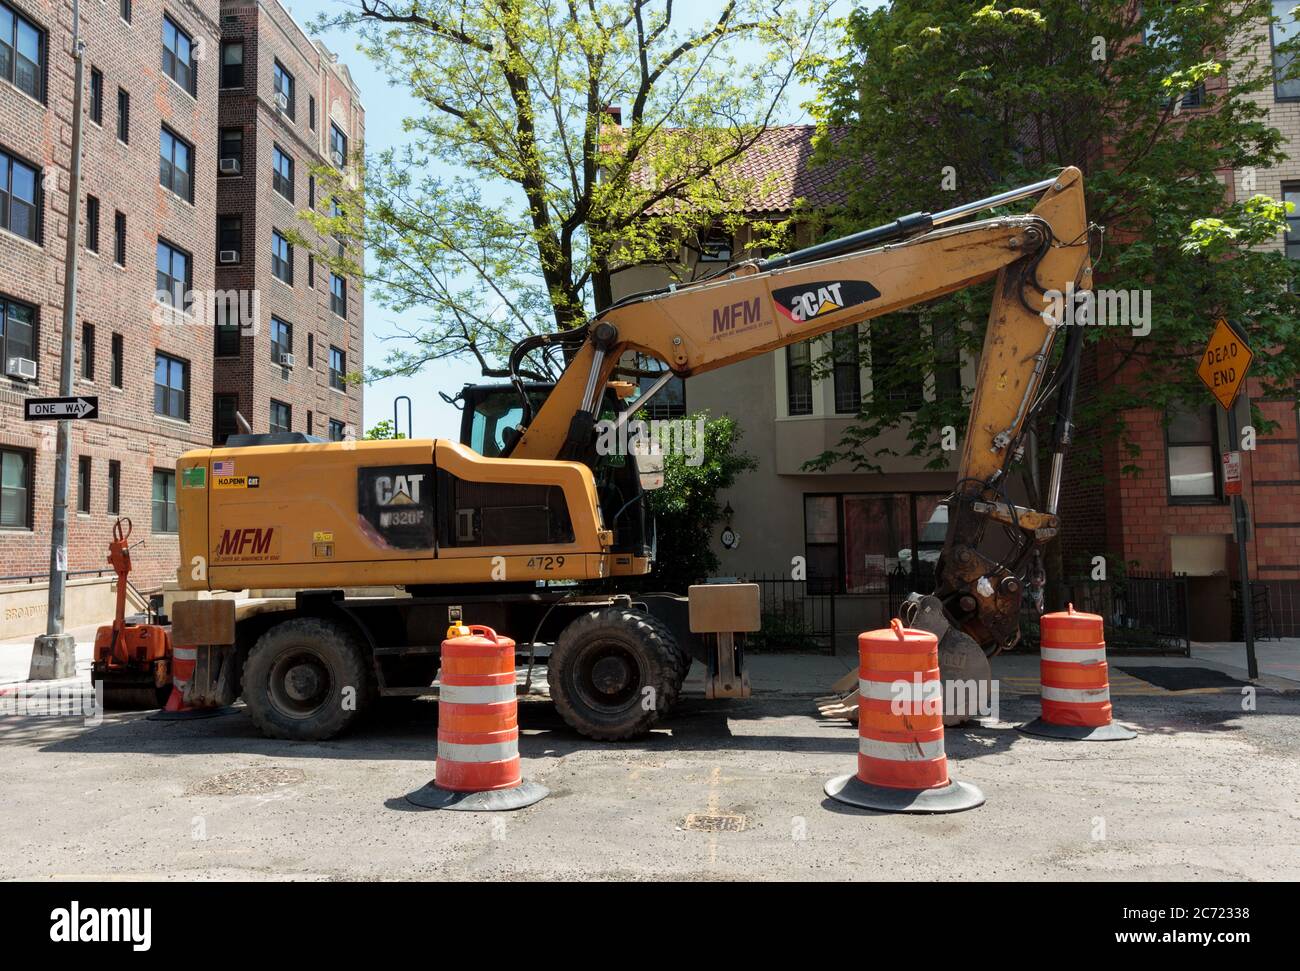 Caterpillar Marke Bulldozer Schaufel LKW auf einer New york Straße geparkt, während von der Stadt für die Arbeit verwendet. Stockfoto